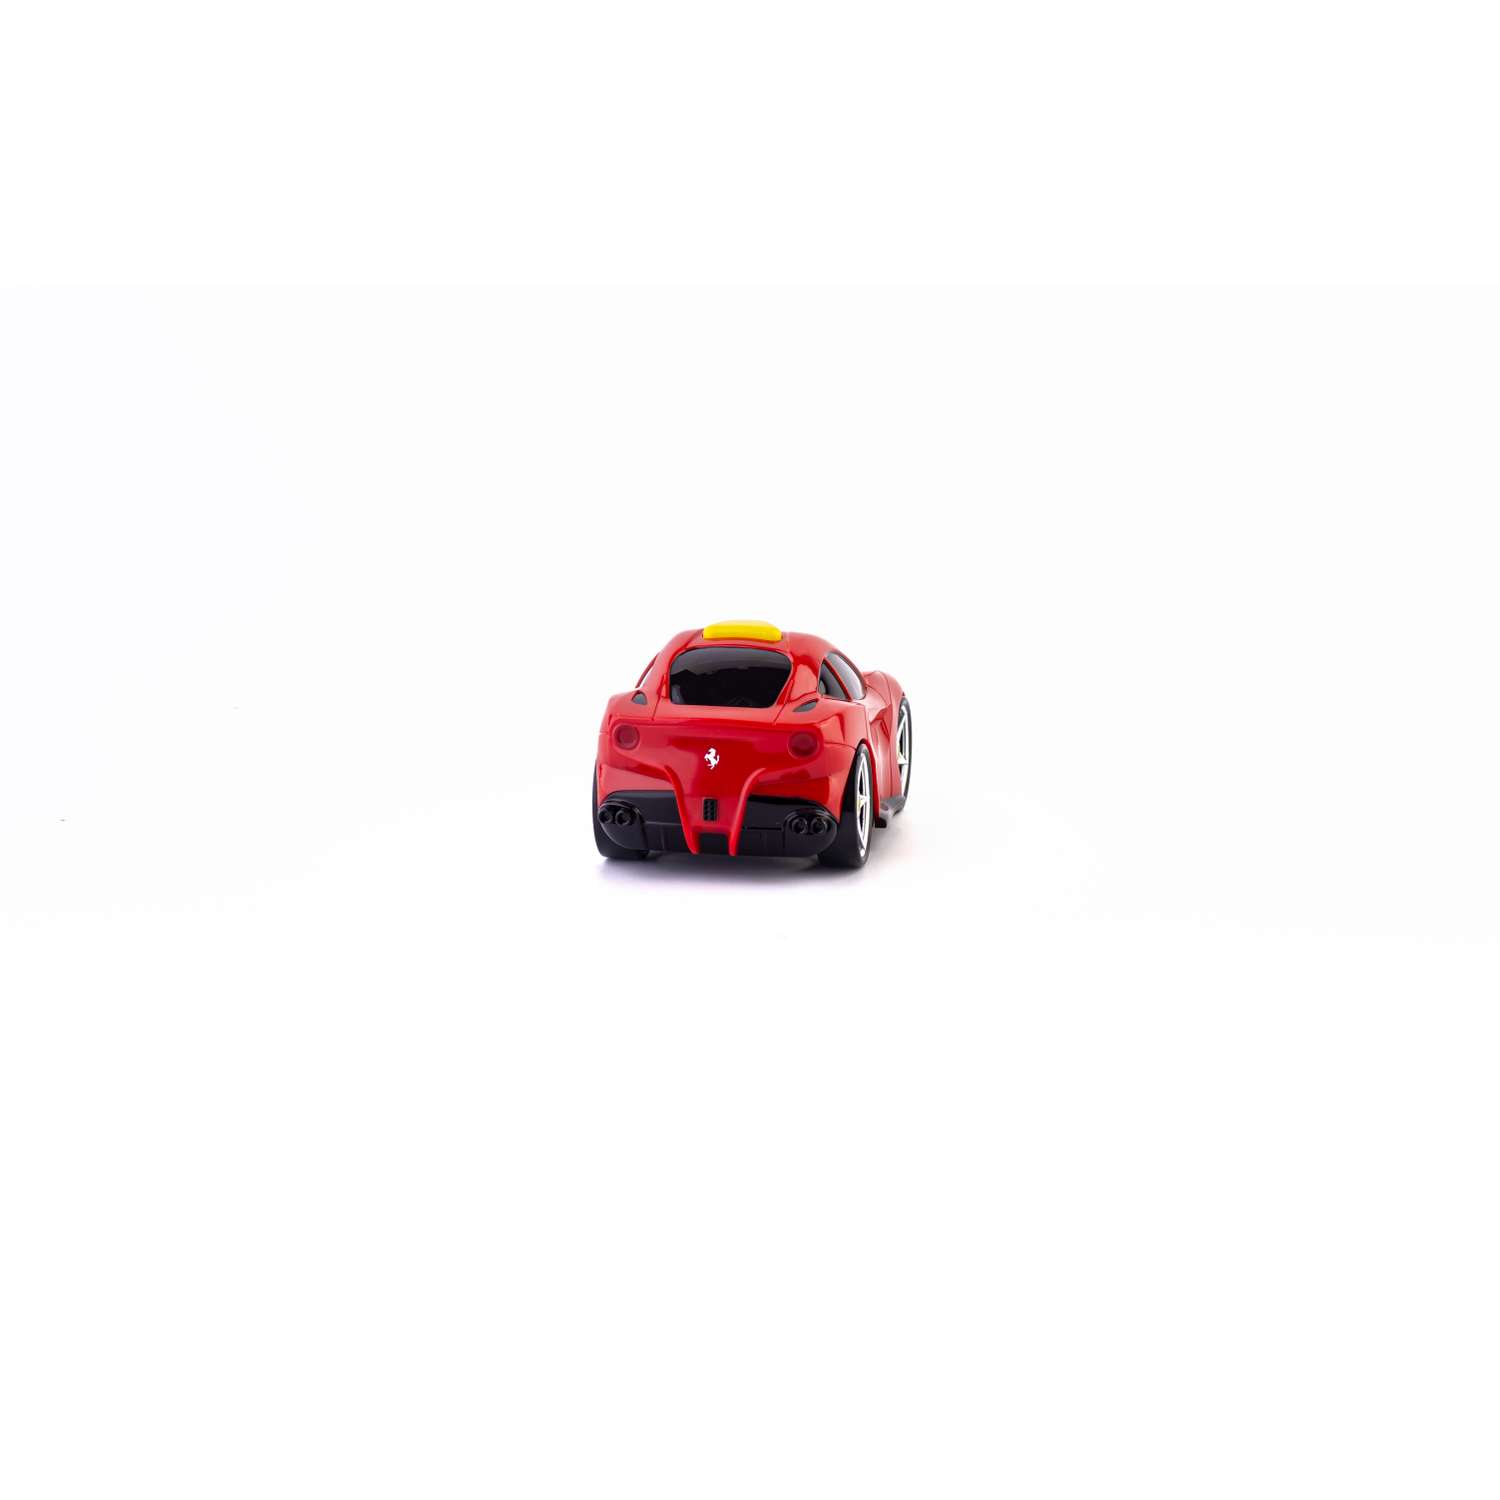 Машинка для малышей Bburago Junior Ferrari F12 Berlinetta 16-81003 - фото 6